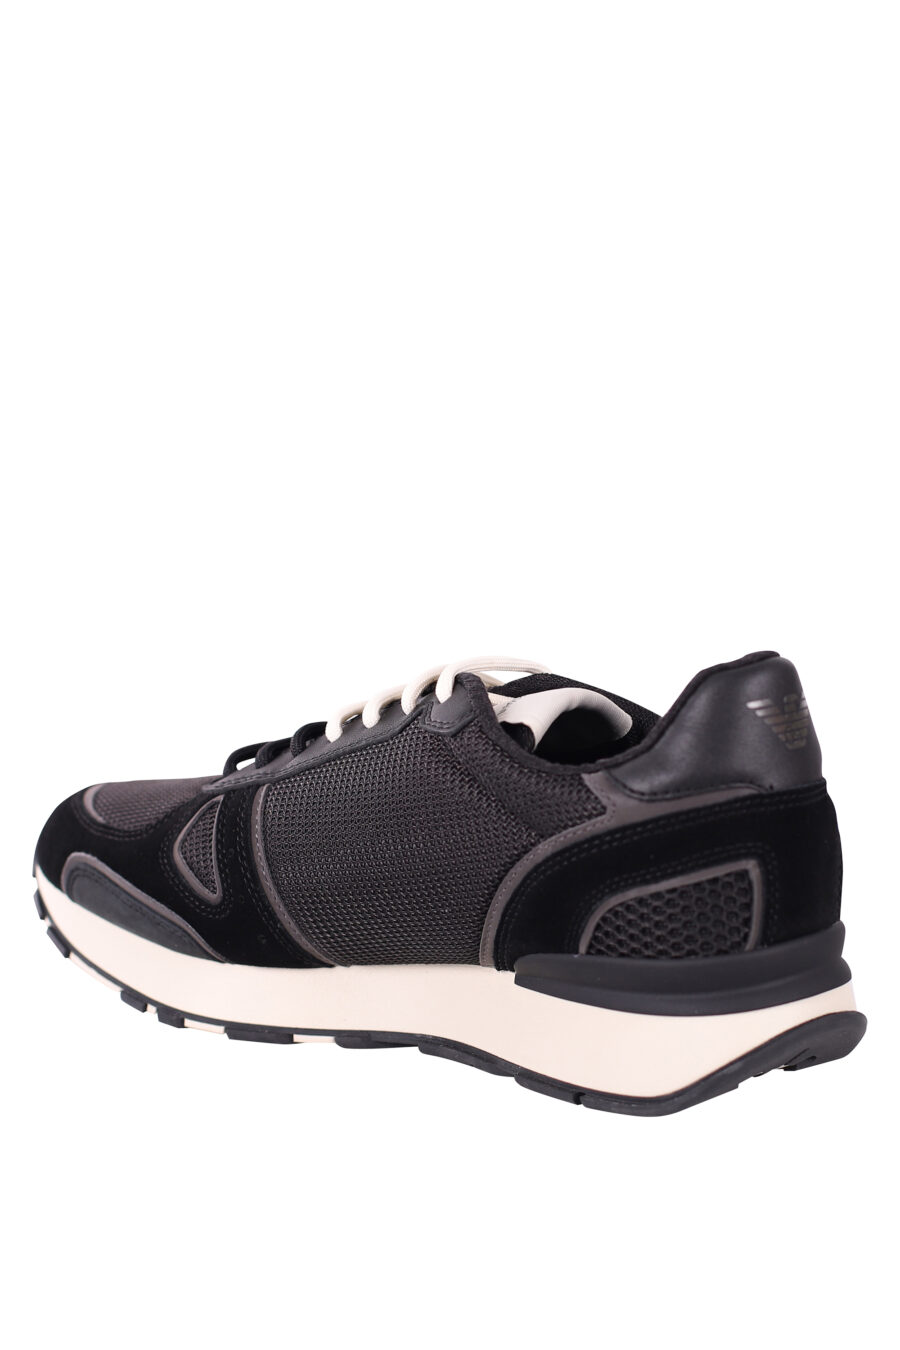 Zapatillas negras con maxilogo aguila blanco - IMG 5779